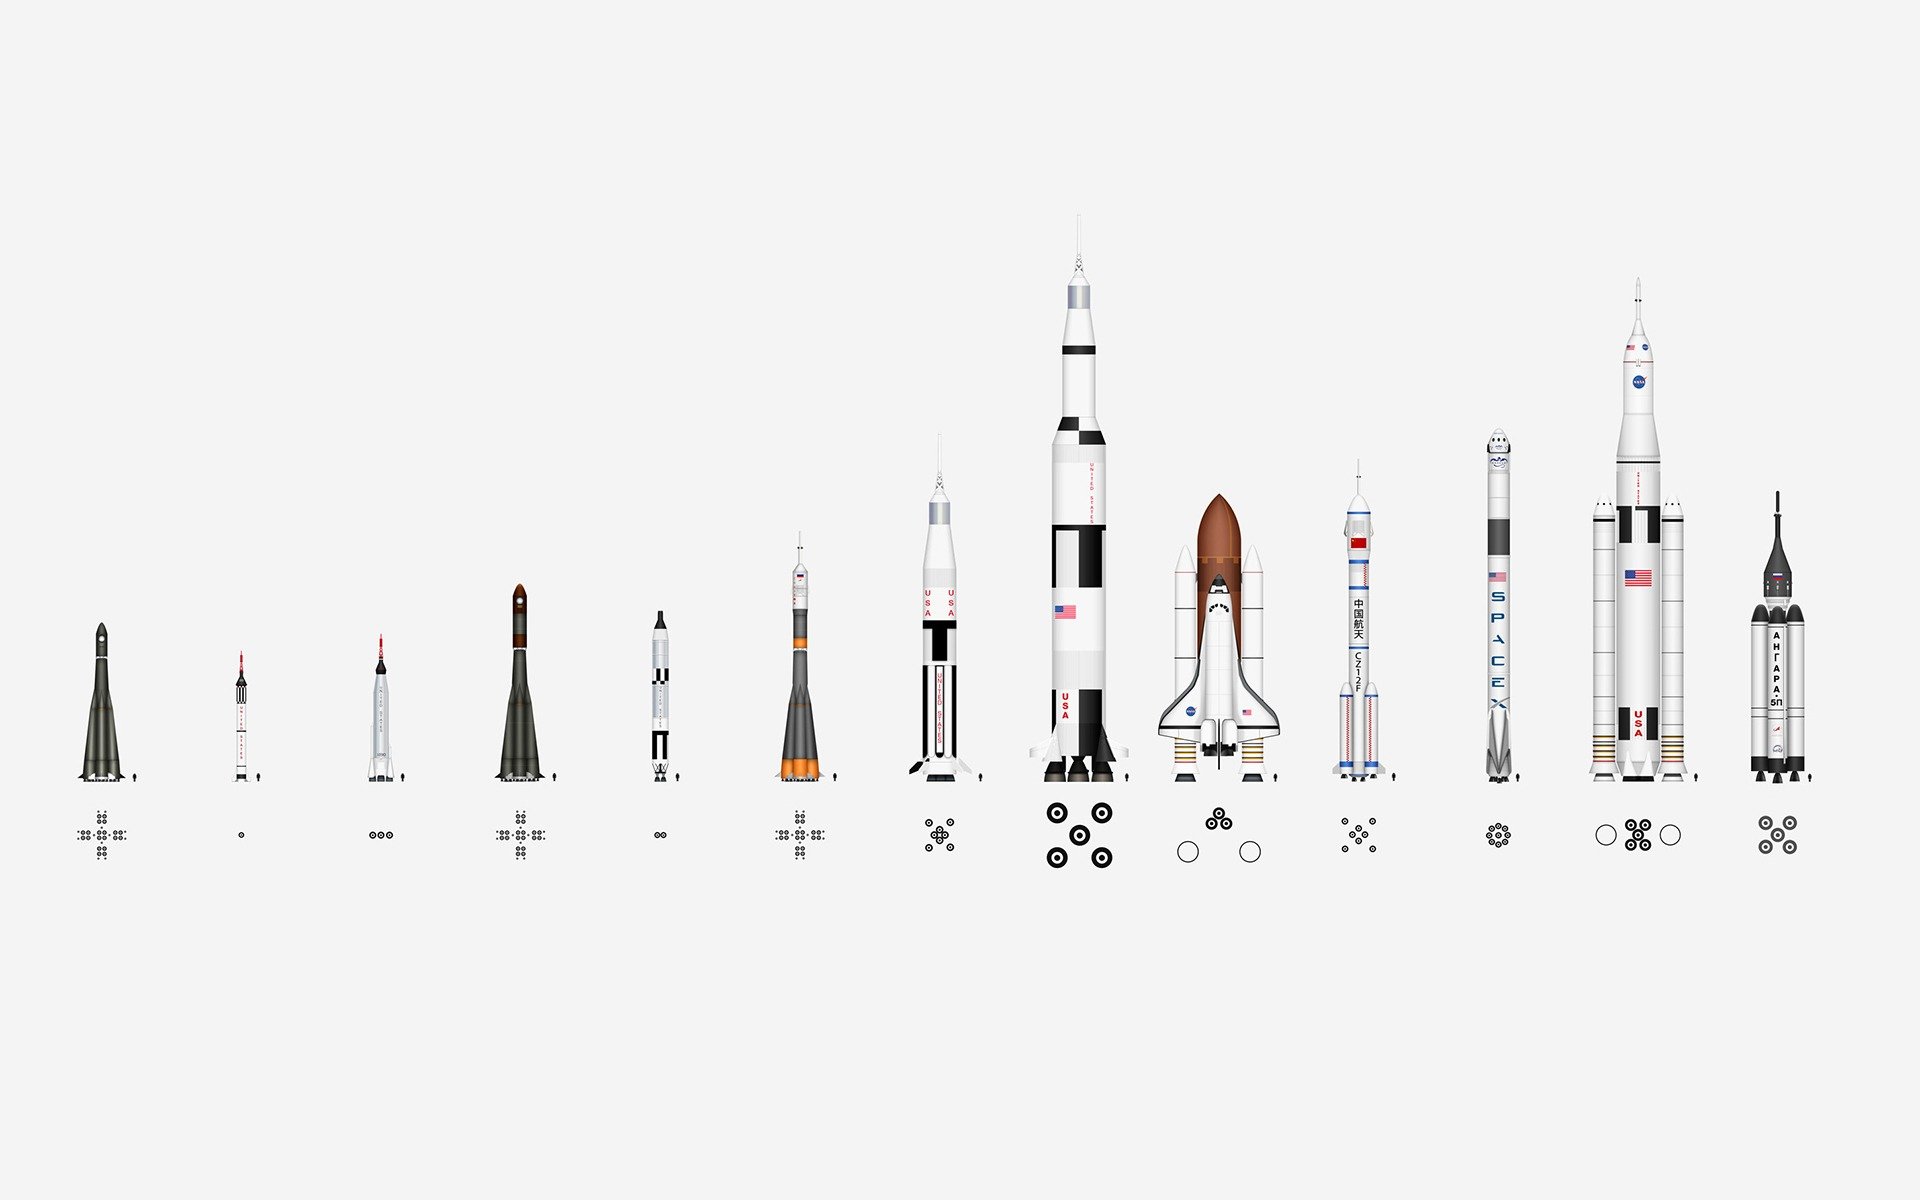 Советские ракеты носители. Ракеты-носители семейства «Протон». Сатурн 5 ракетоноситель чертёж. Модель звезда ракетоноситель Союз. Сатурн-5 ракета-носитель и Шатл.